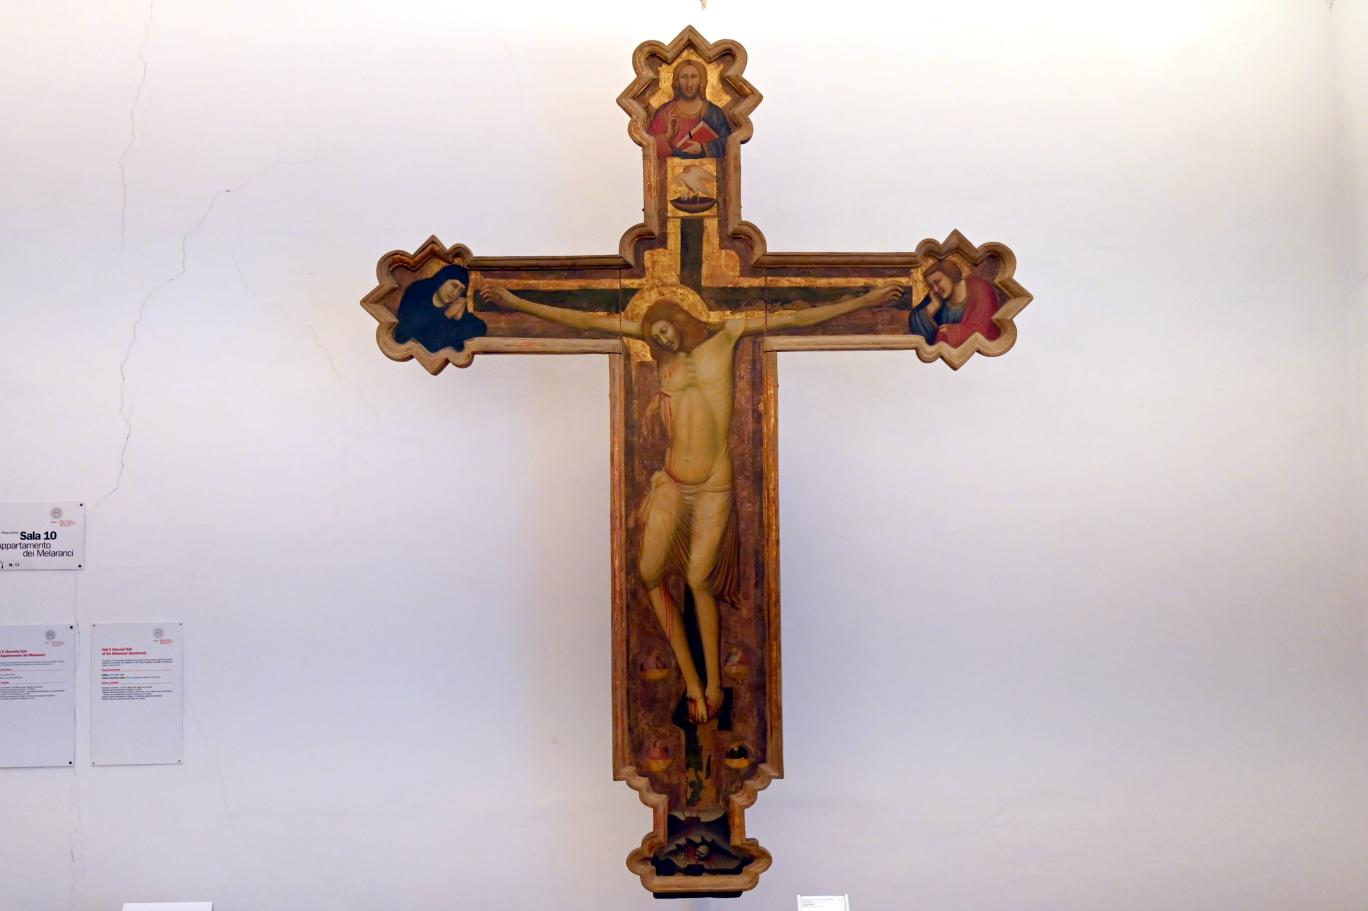 Maestro dell'Incoronazione di Urbino (1347), Kruzifixus, Urbino, Galleria Nazionale delle Marche, Saal 10, 1345–1350